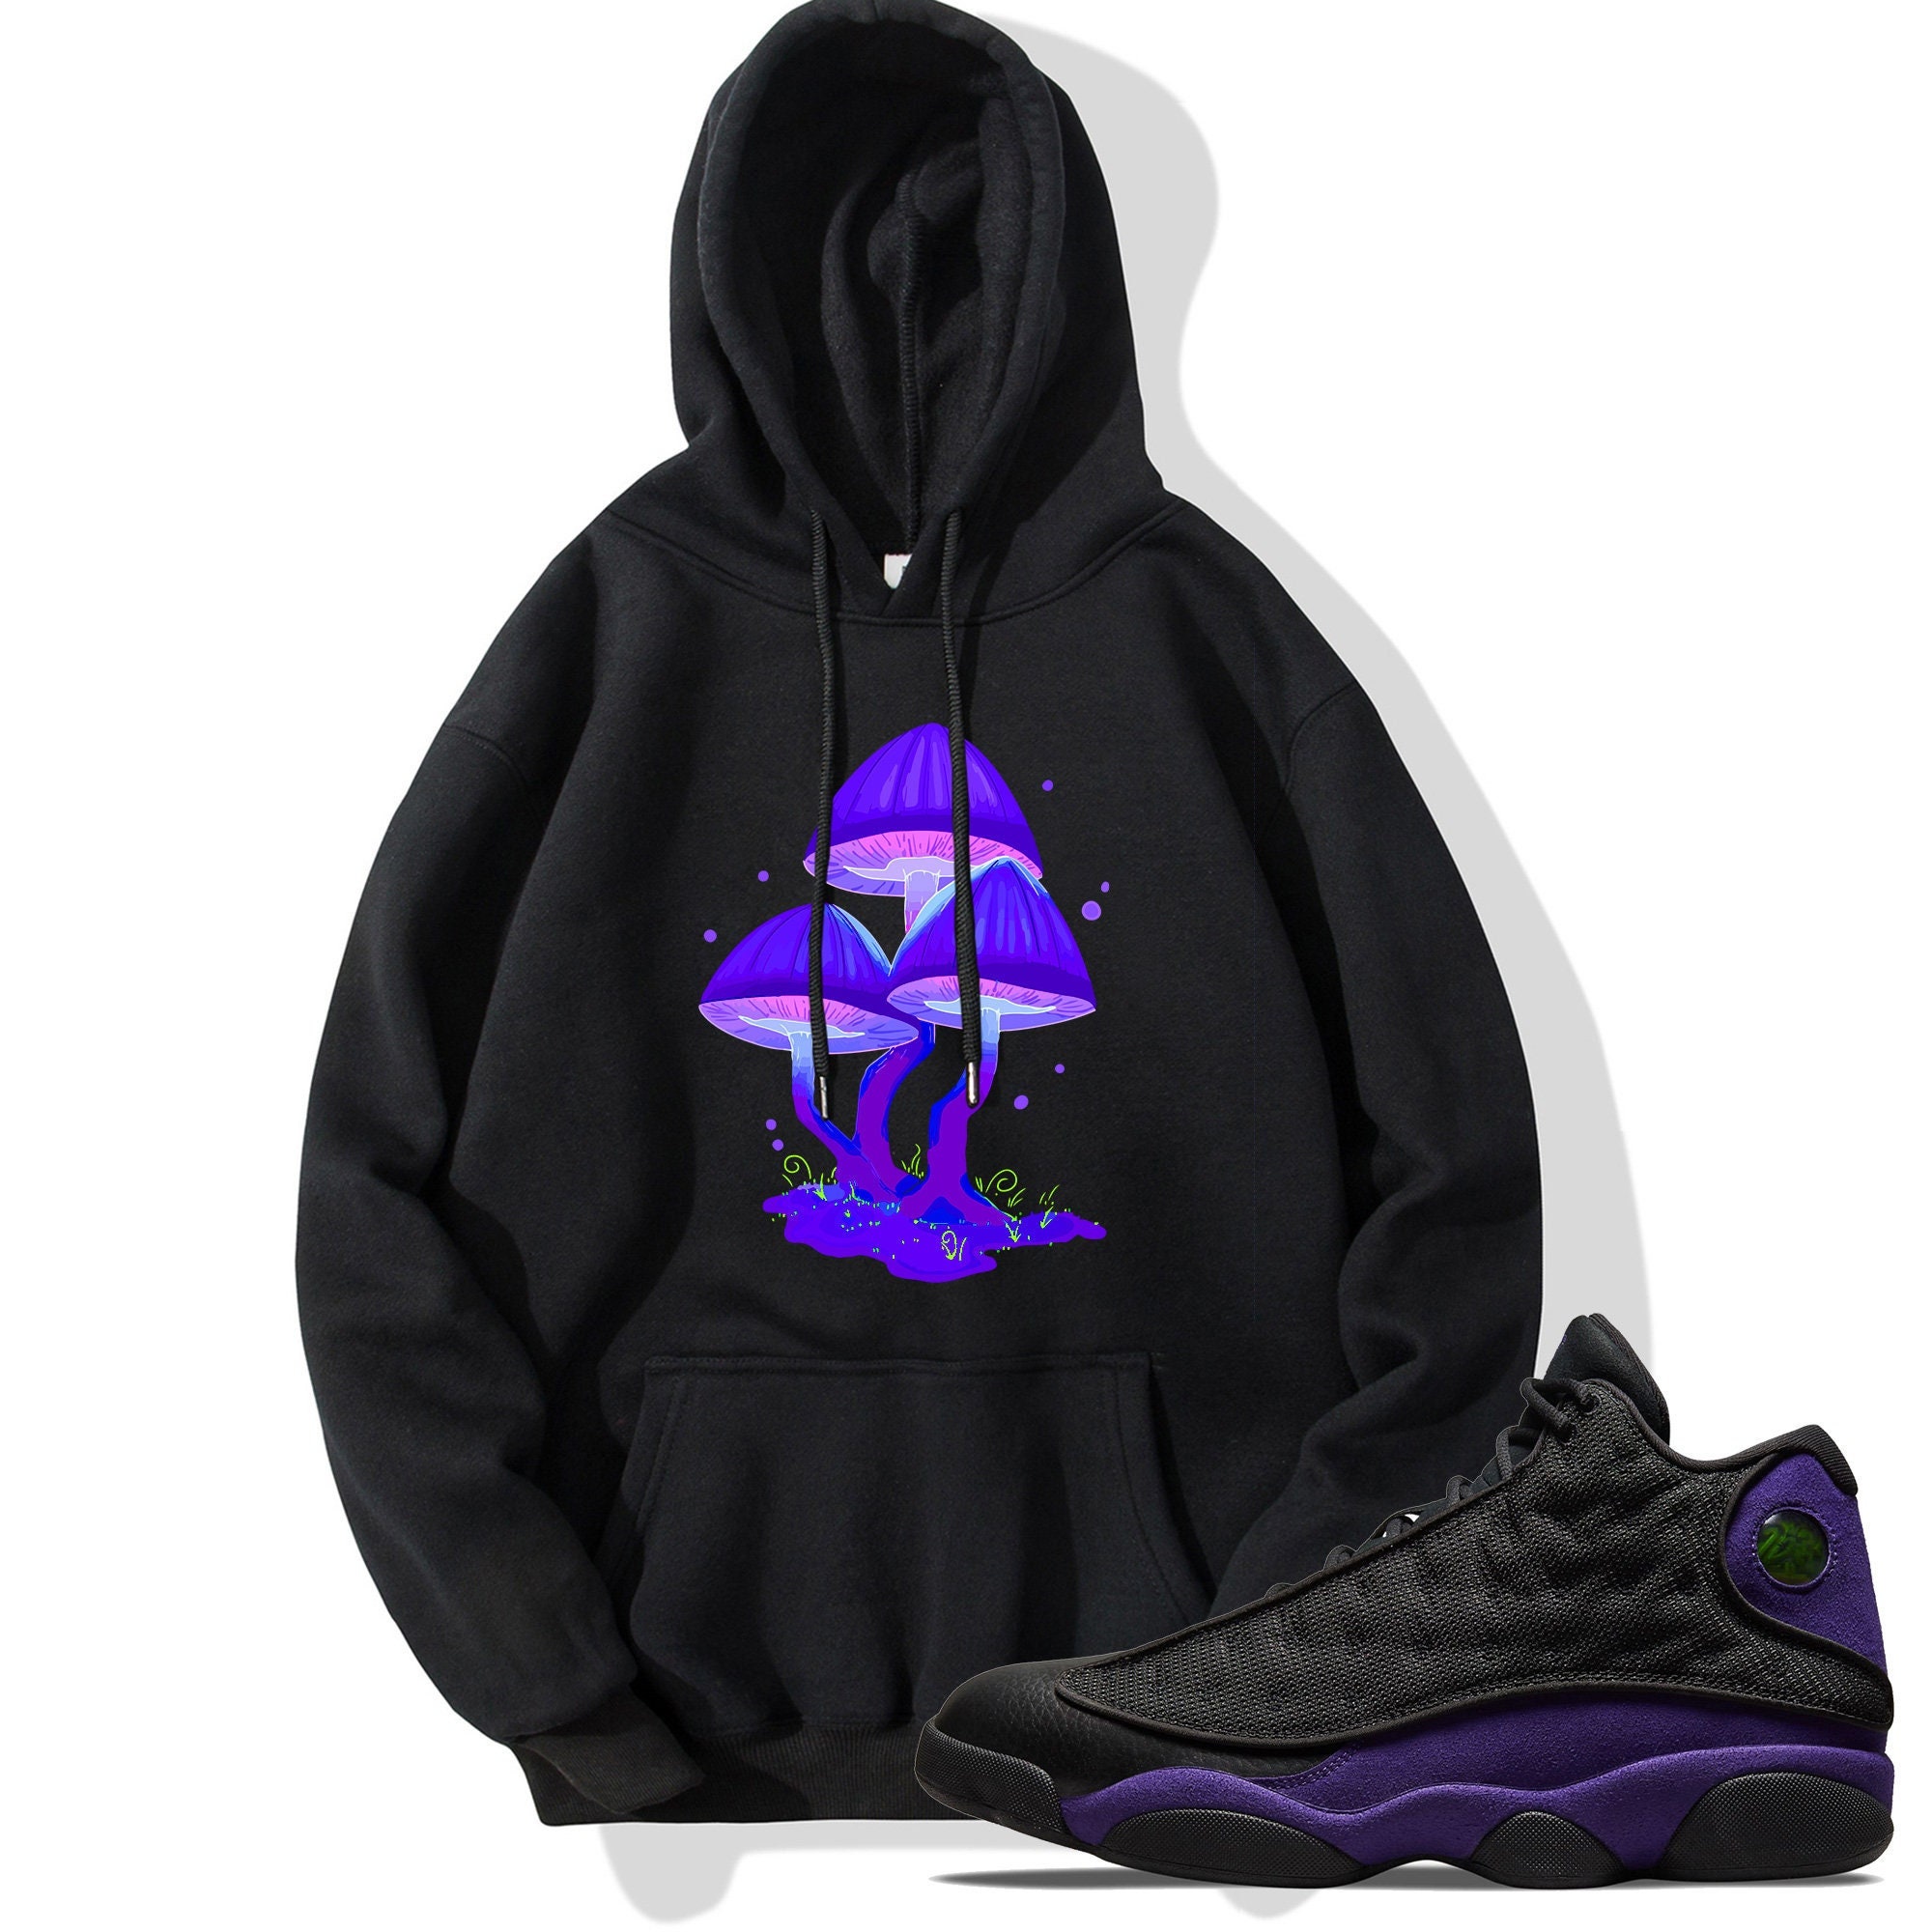 black and purple jordan hoodie